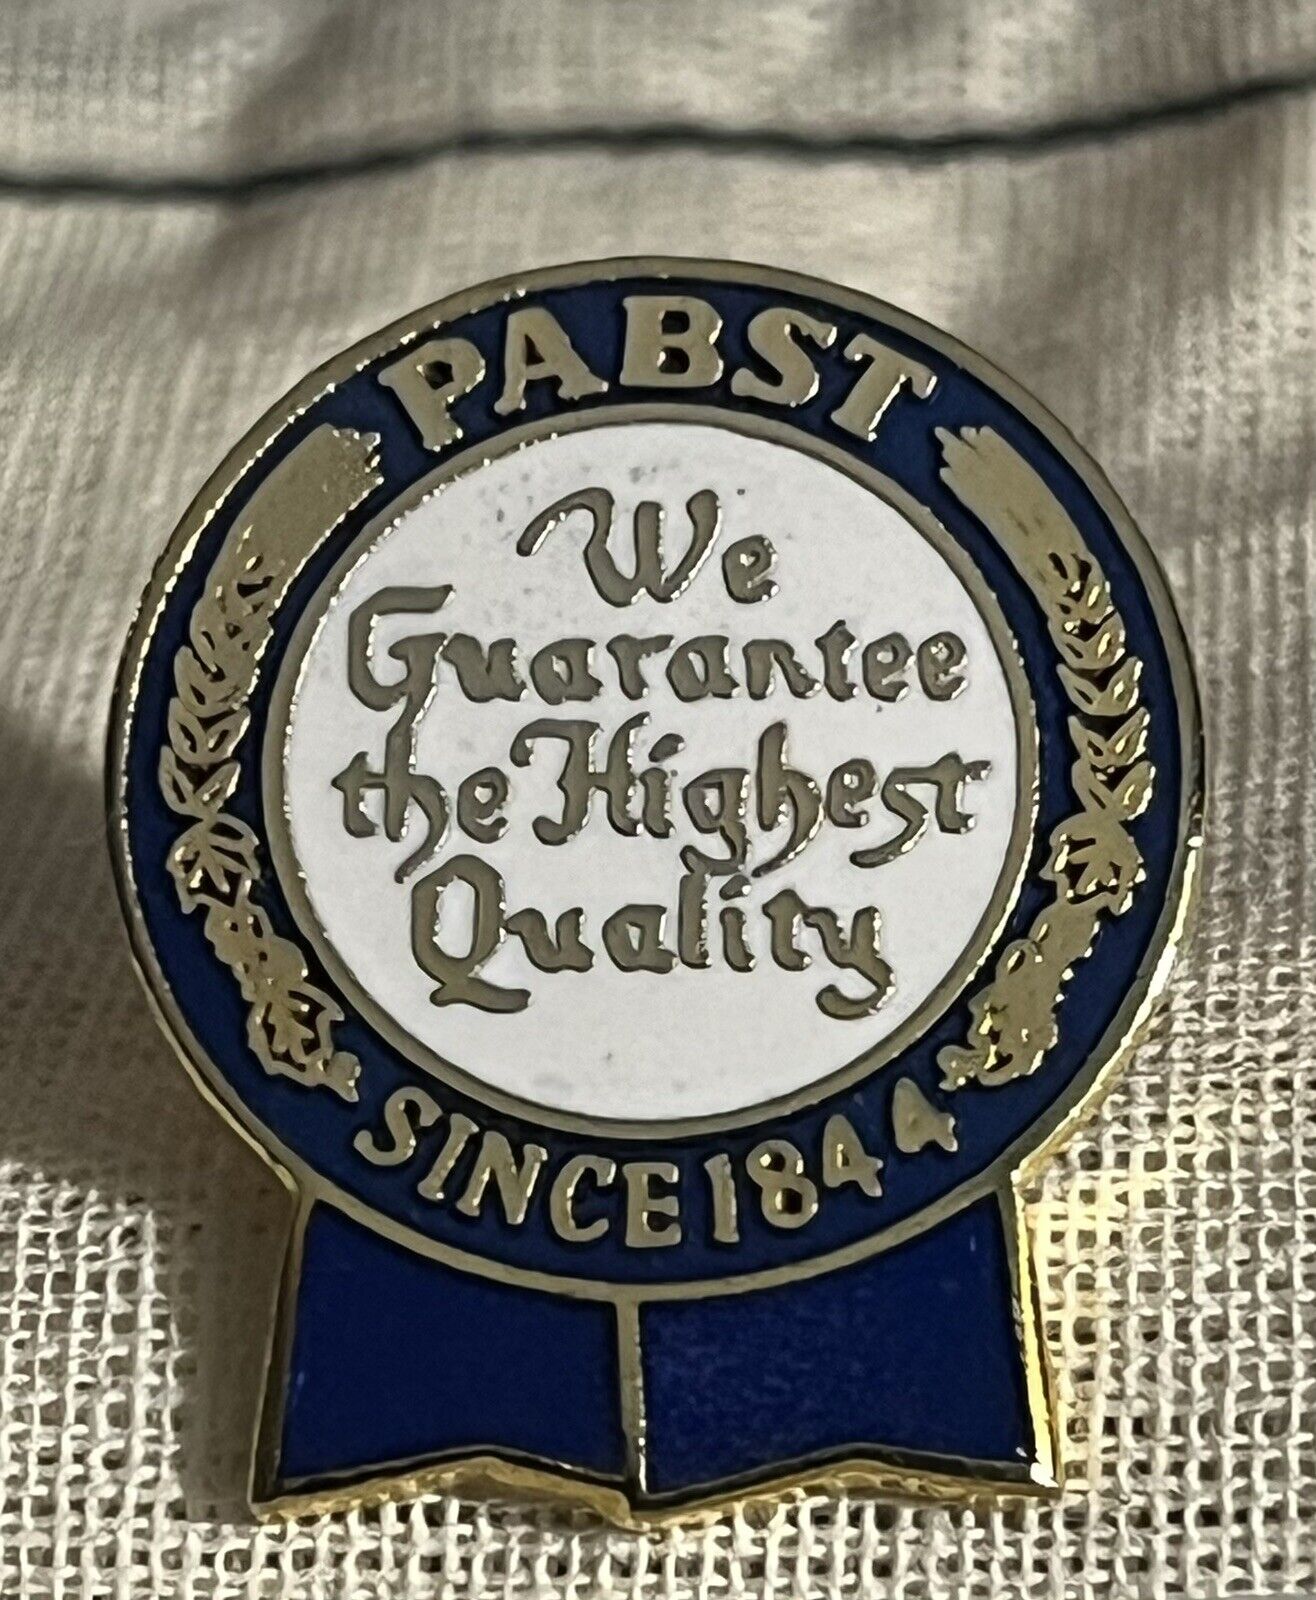 Vintage Pabst Brewing Since 1844 Enamel Beer Advertising Tie Tack Lapel Pin (T19